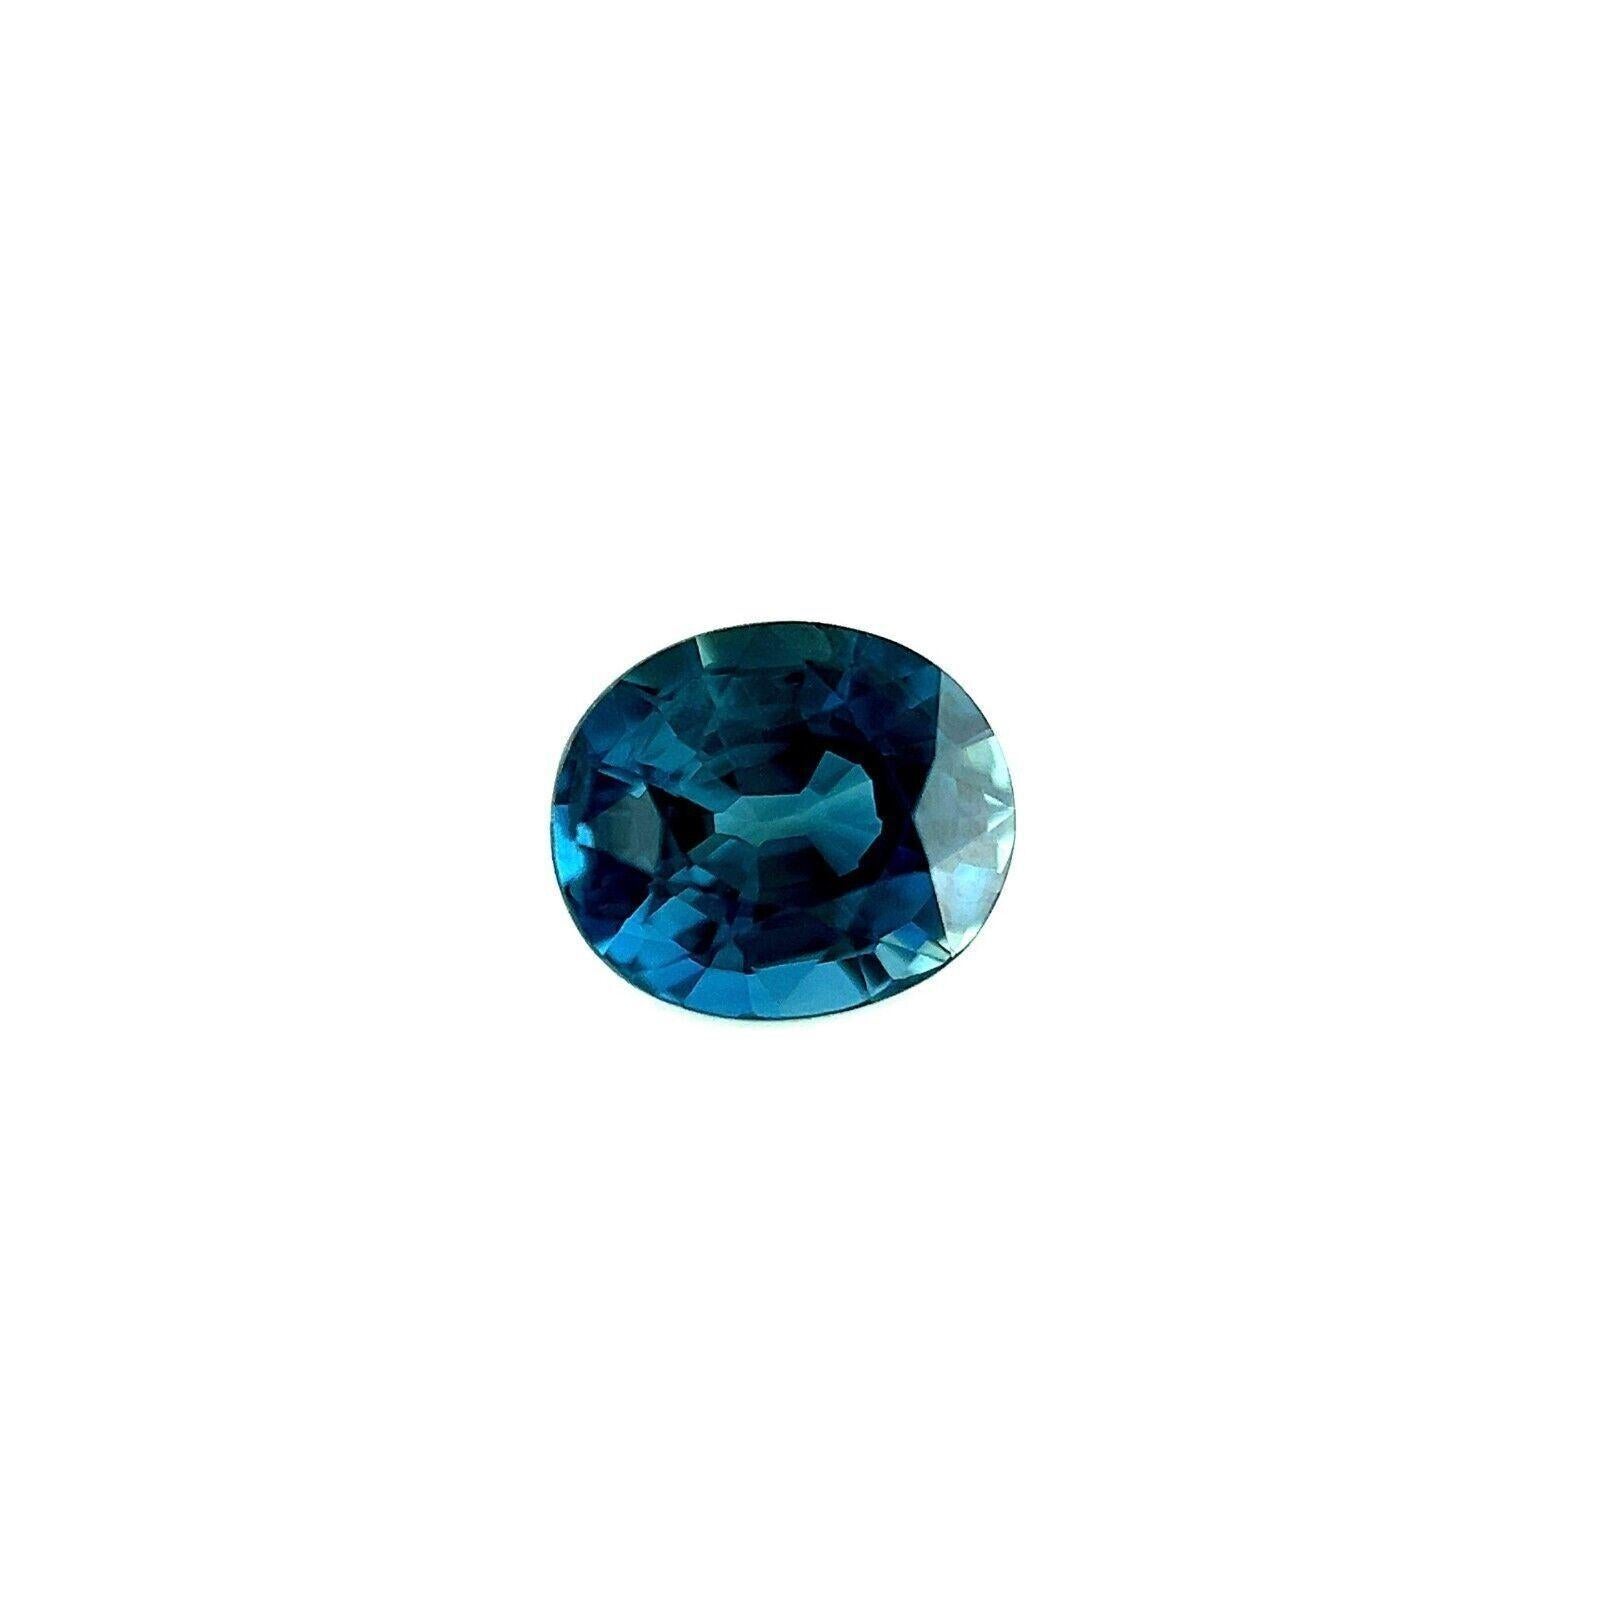 Top Grade 0.71ct Saphir Australien Bleu Naturel Ovale Gemme Rare 5.5x4.8mm VVS

Saphir bleu australien naturel de première qualité.
0,71 carat avec une belle couleur bleue fine et une excellente clarté, une pierre très propre. La coupe et le